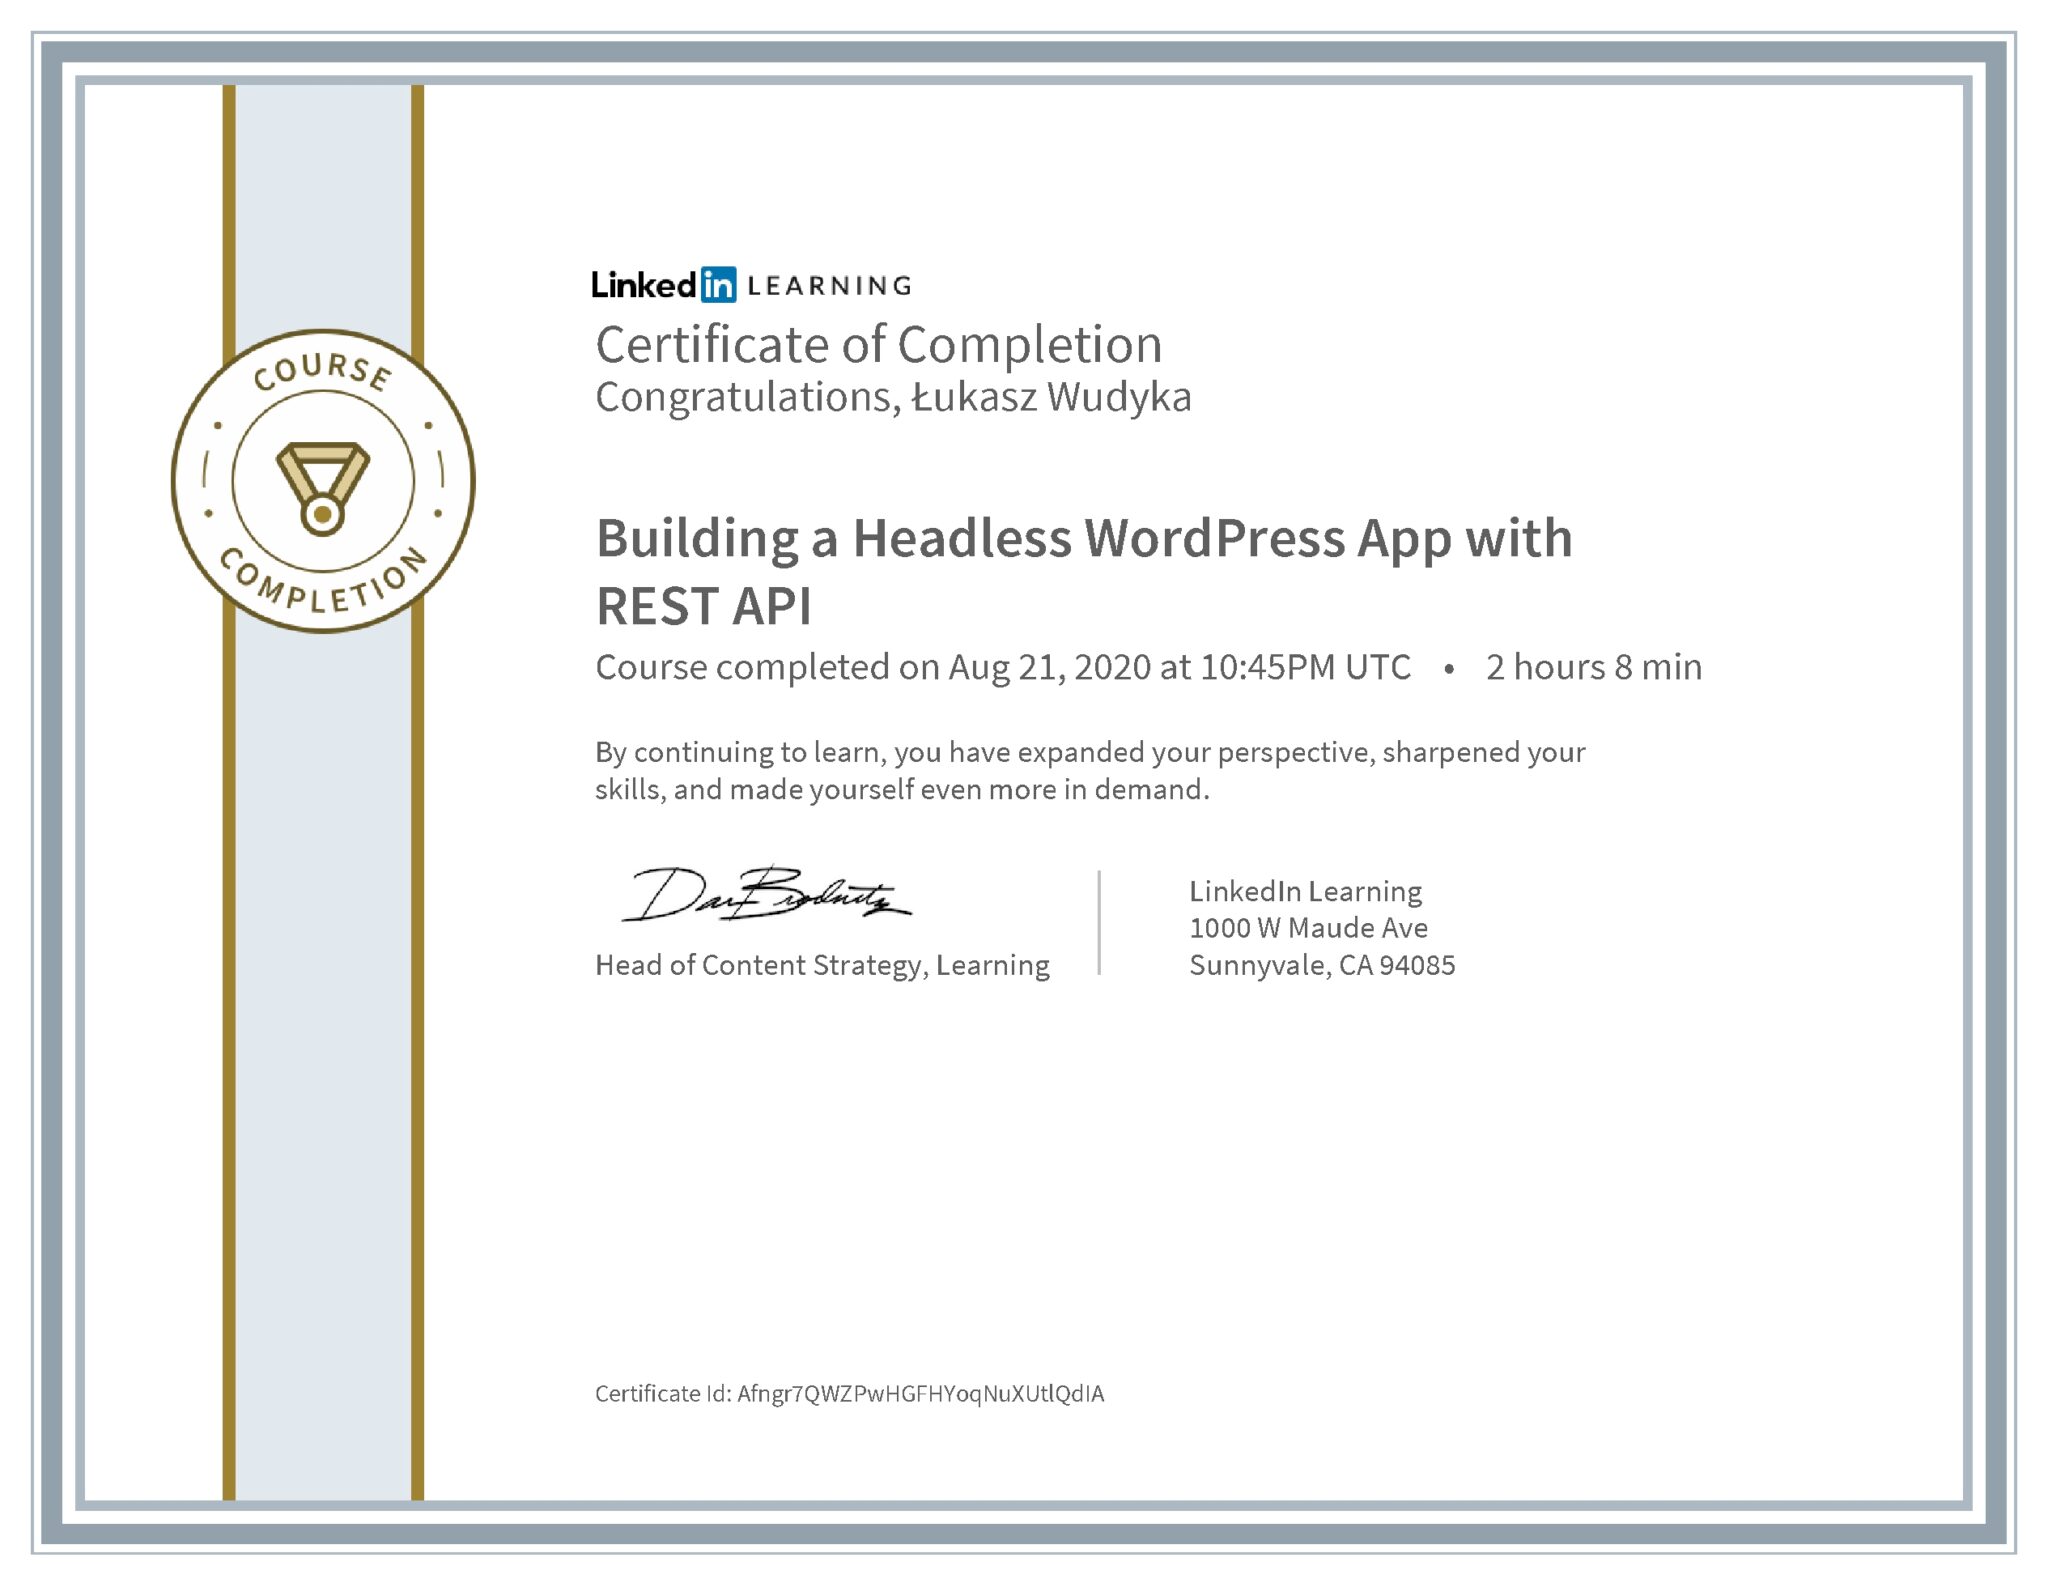 Łukasz Wudyka certyfikat LinkedIn Building a Headless WordPress App with REST API